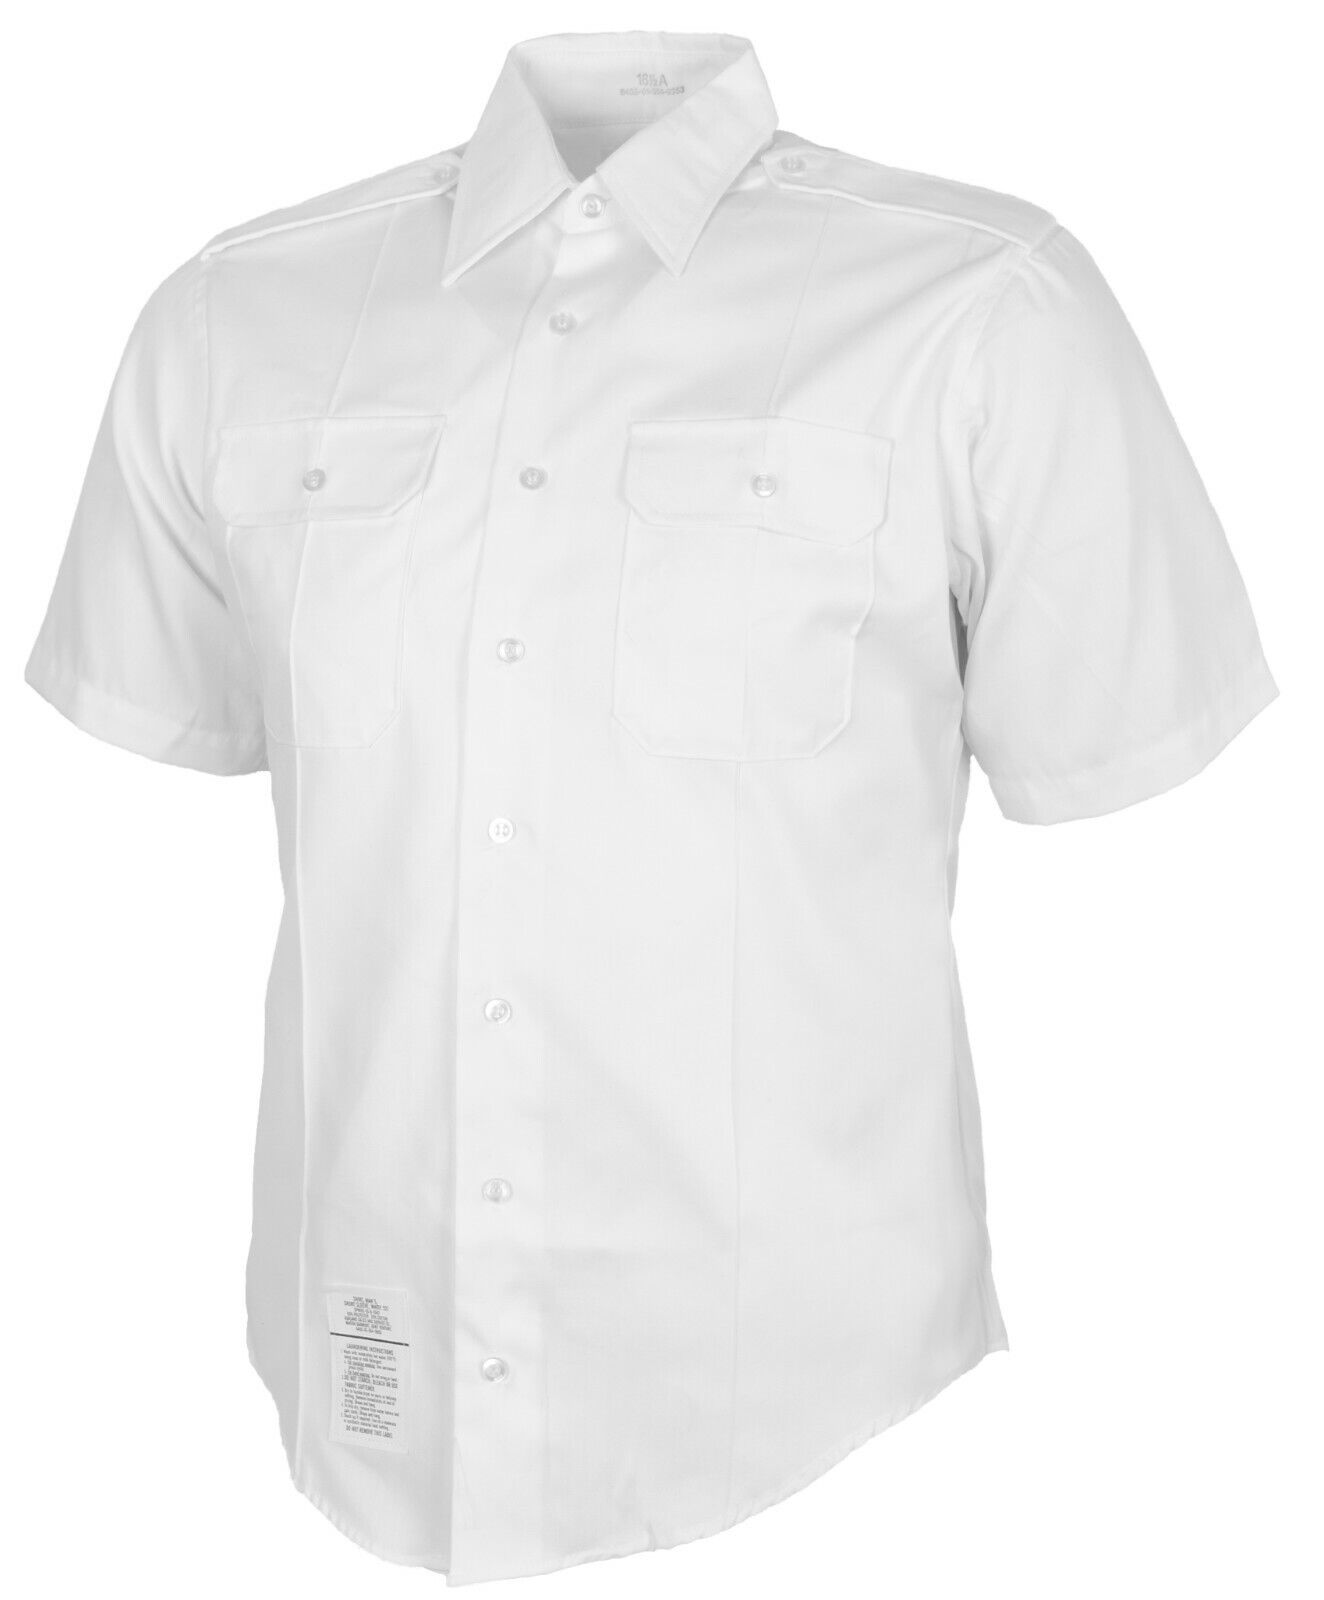 US Army ASU White Dress Shirt Short Sleeve Uniform Shirt 16.5 US Size Large